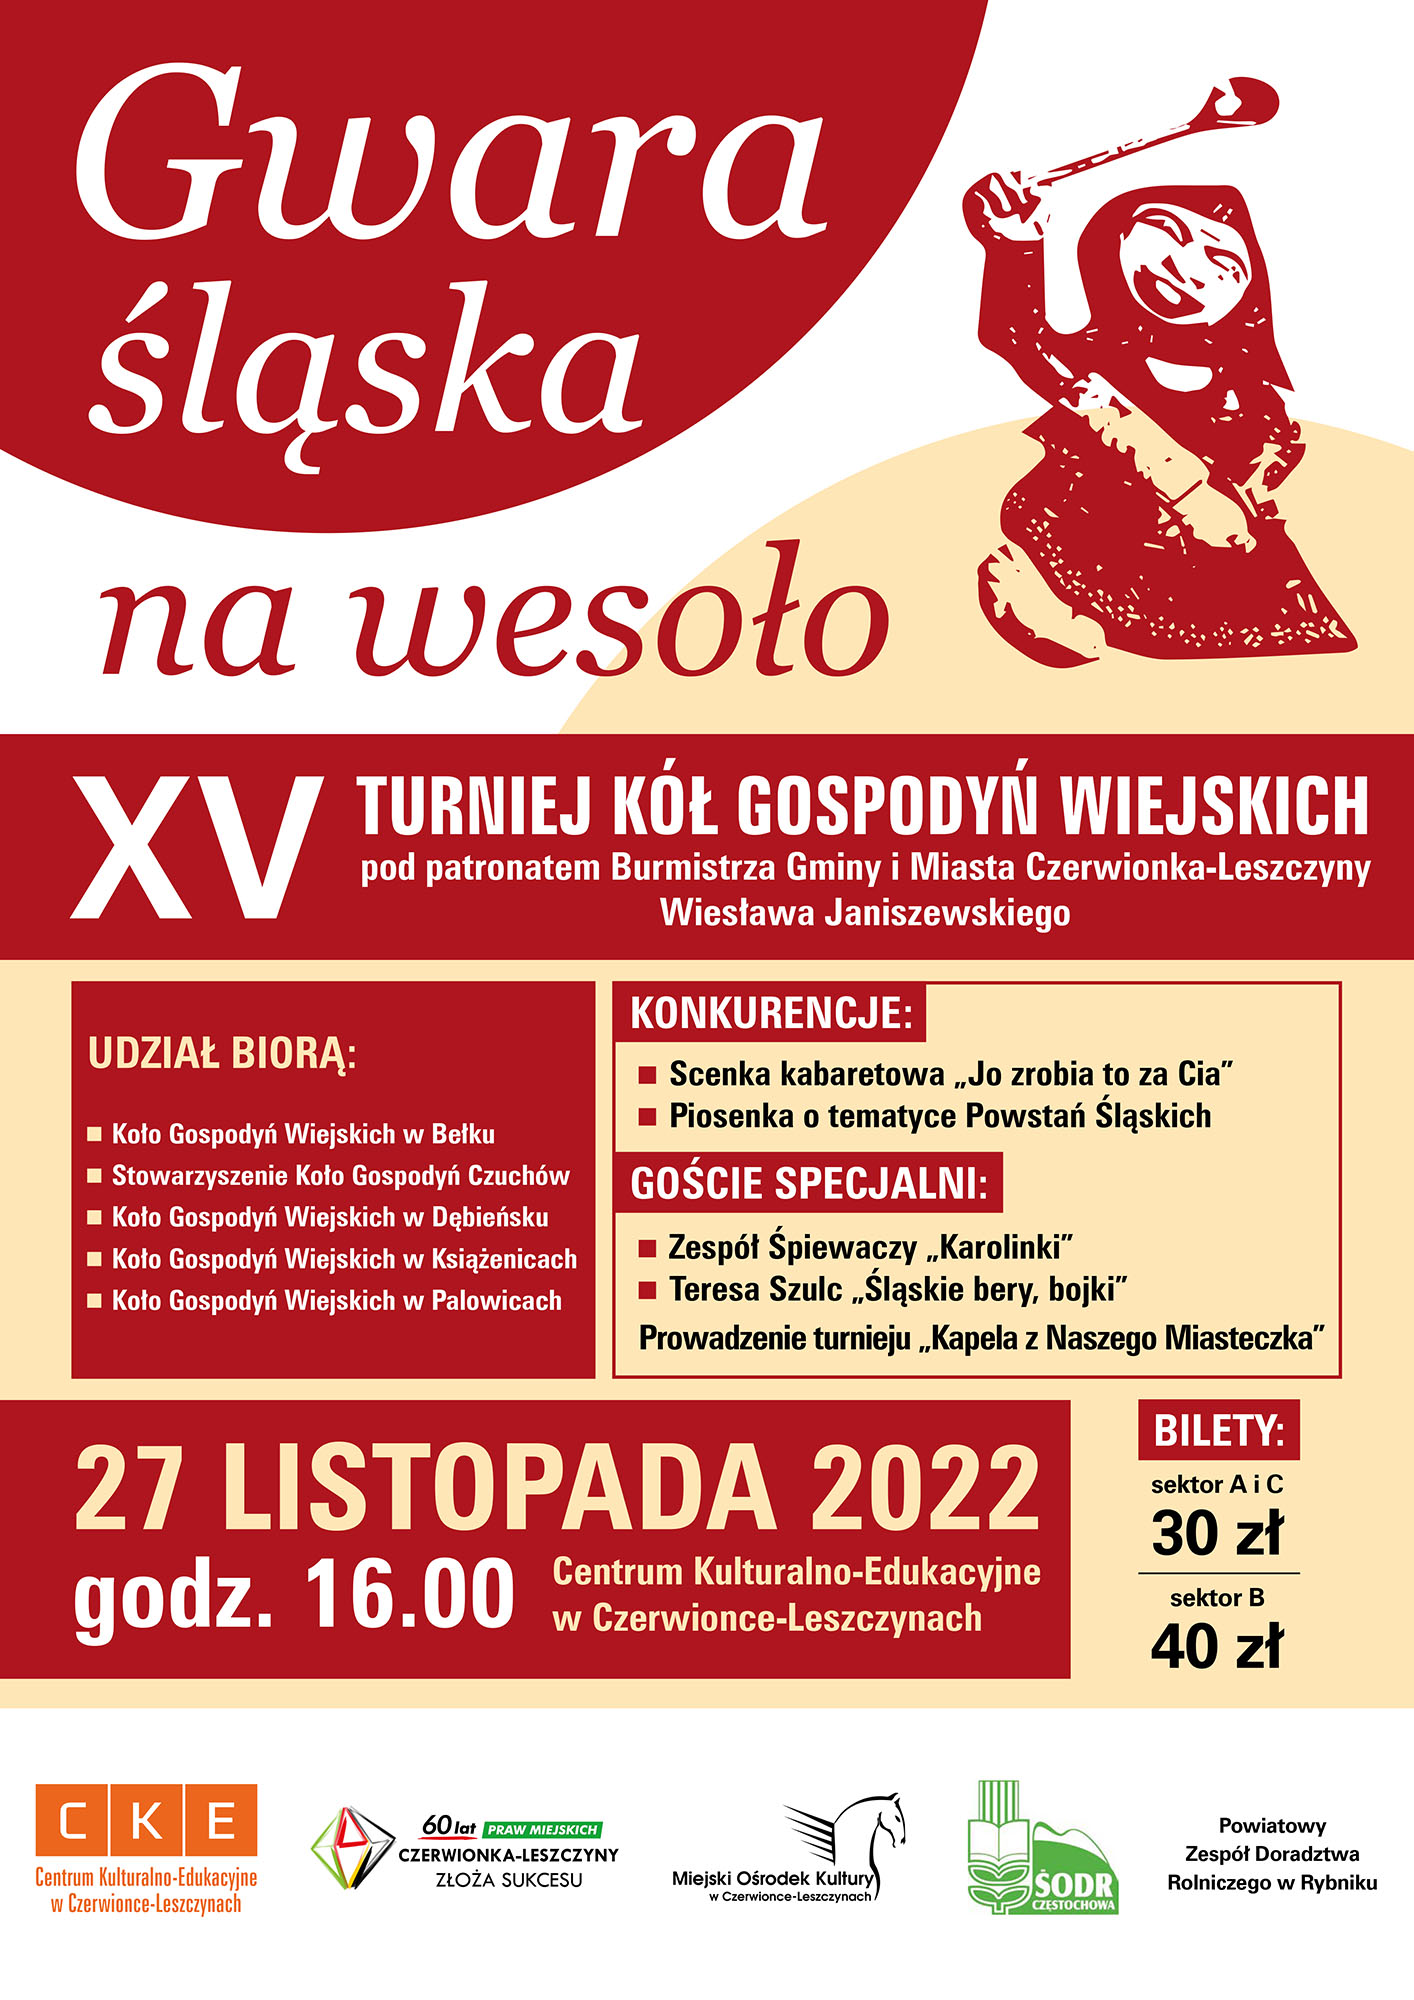 Plakat XV Turnieju Kół Gospodyń Wiejskich "Gwara Śląska na wesoło"